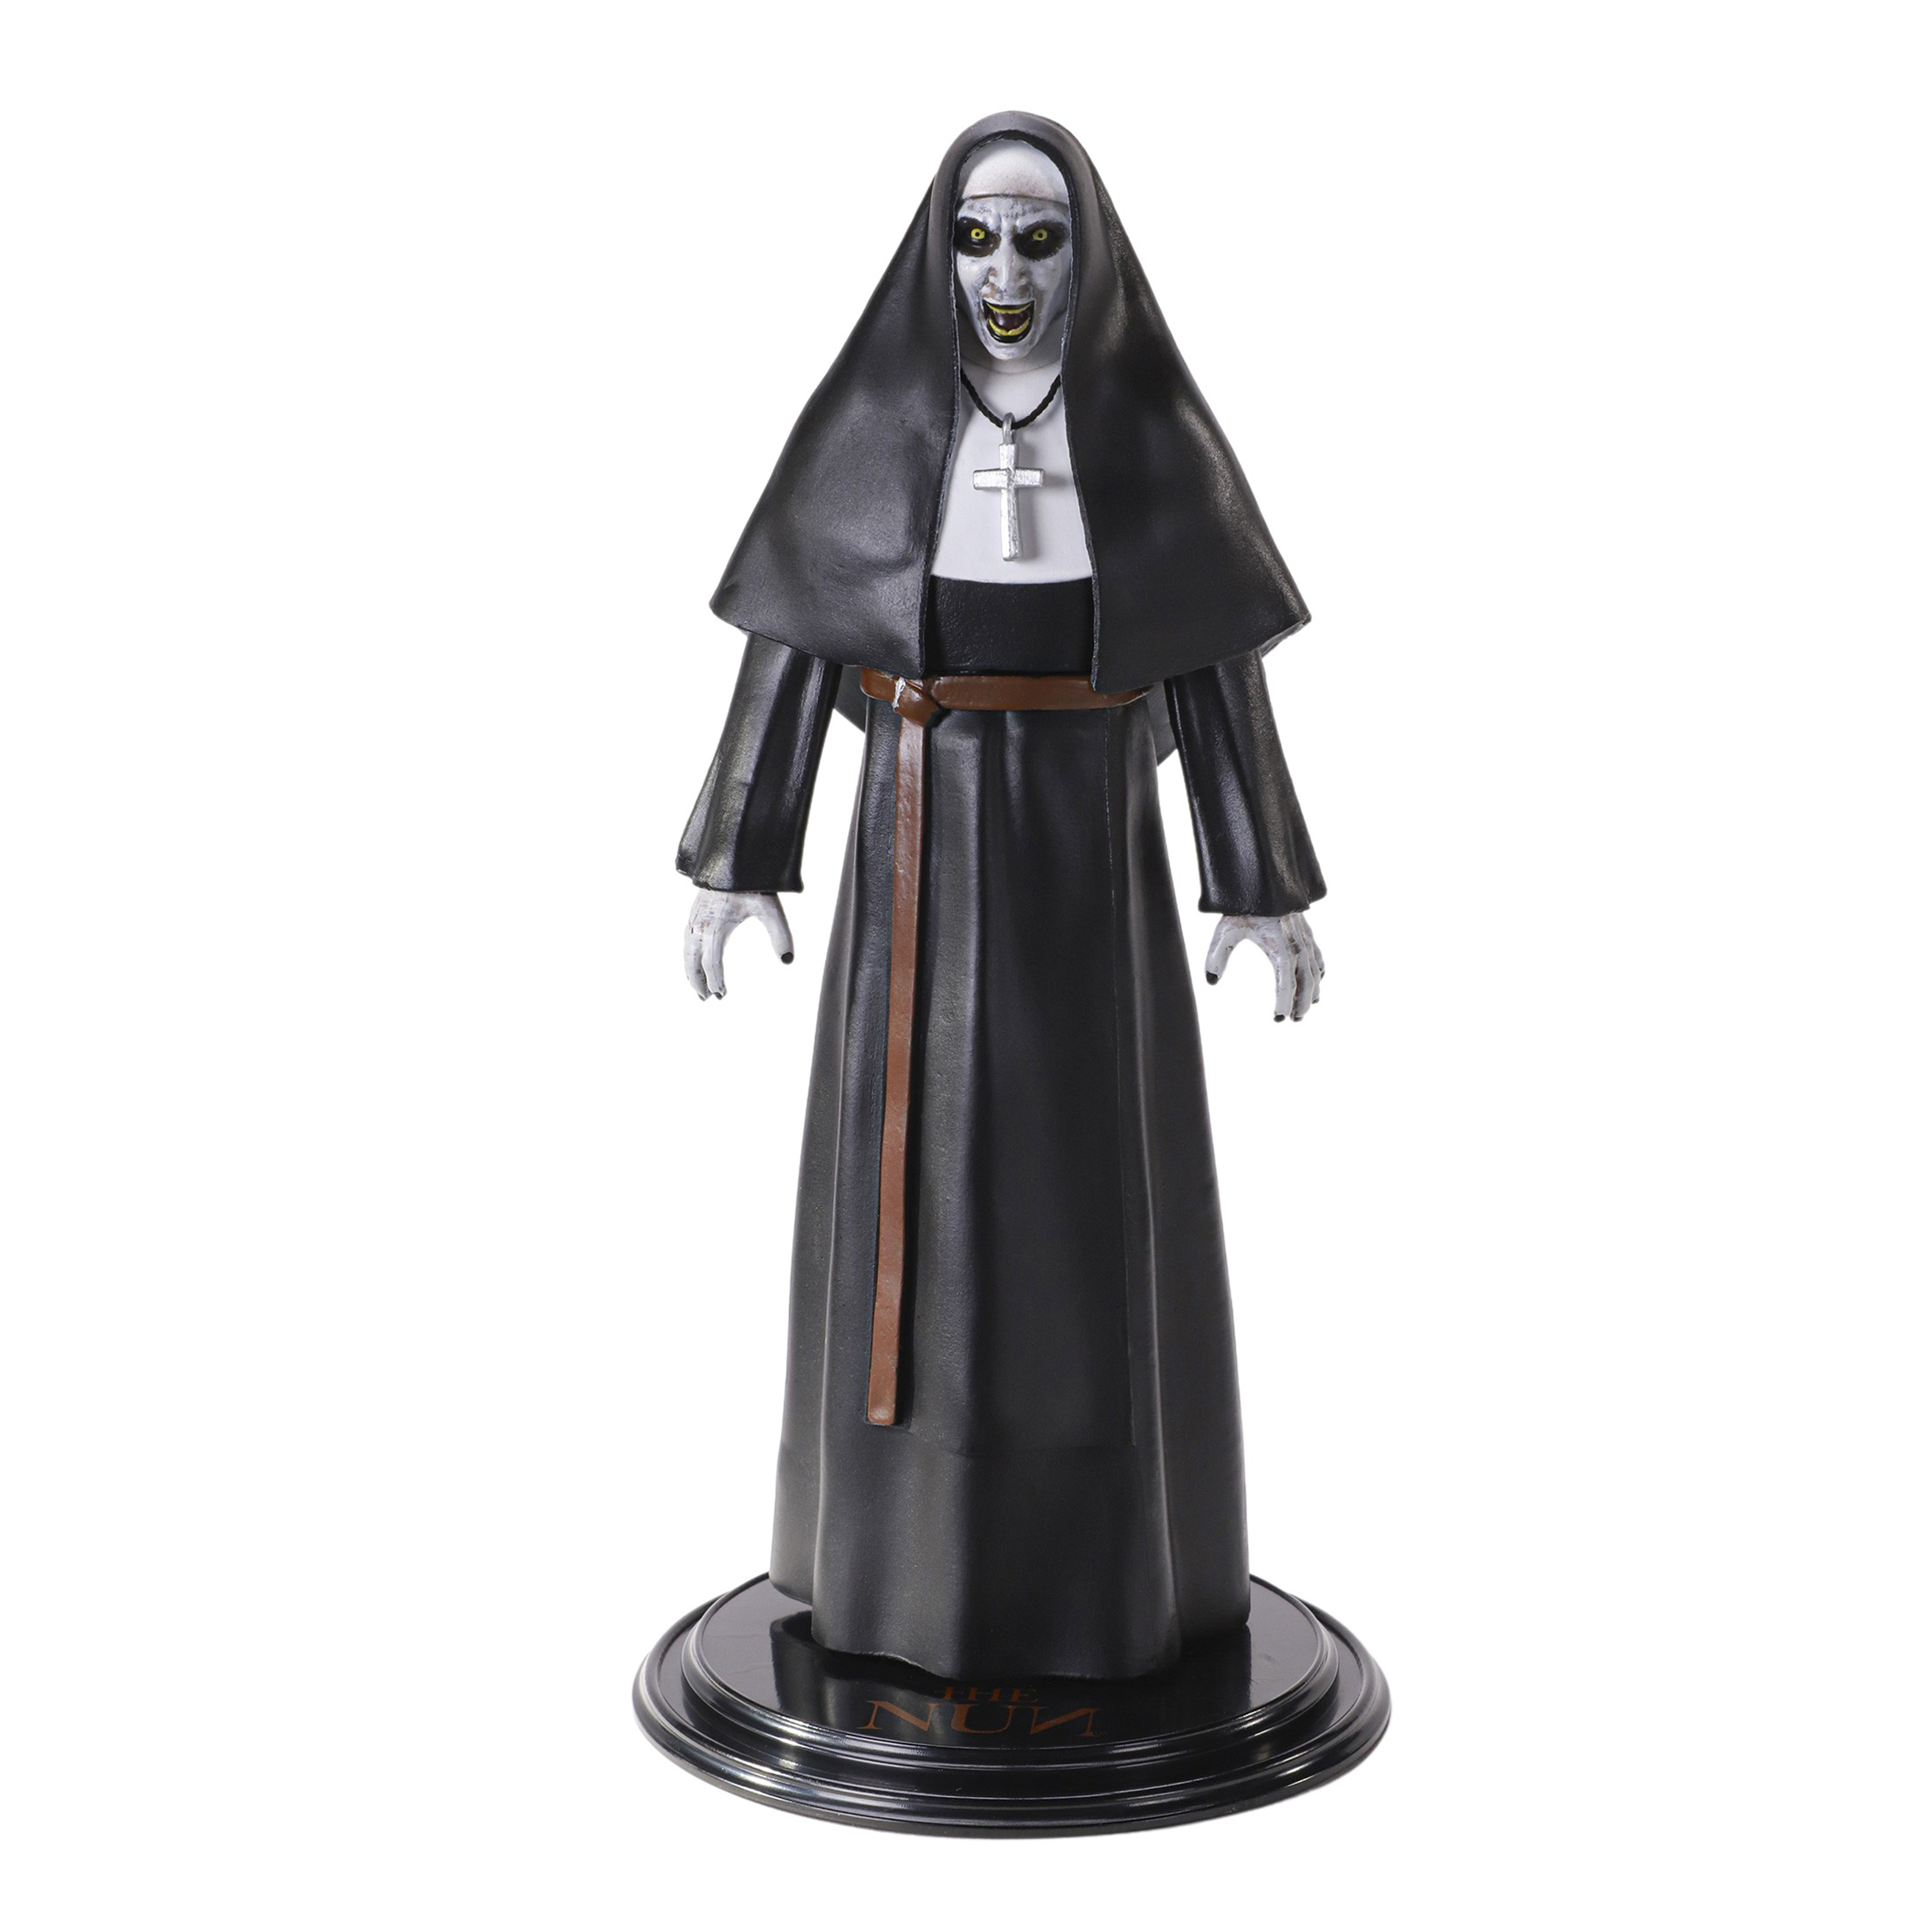 Figurina articulata IdeallStore®, Valak The Nun, editie de colectie, 17 cm, stativ inclus